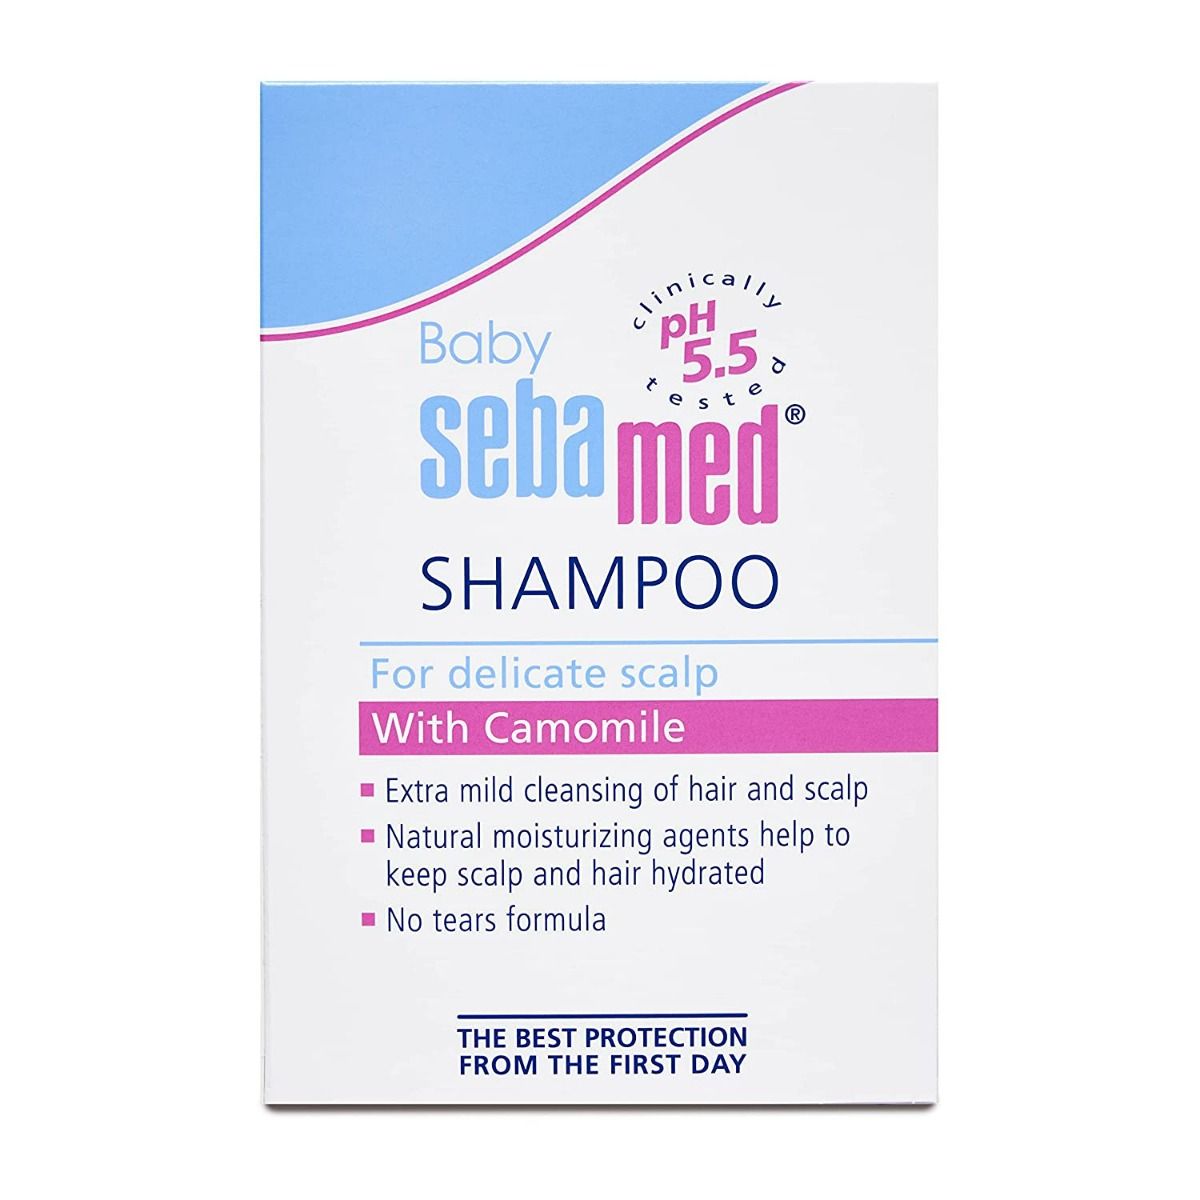 Sebamed Baby Shampoo, 150 ml, Pack of 1 